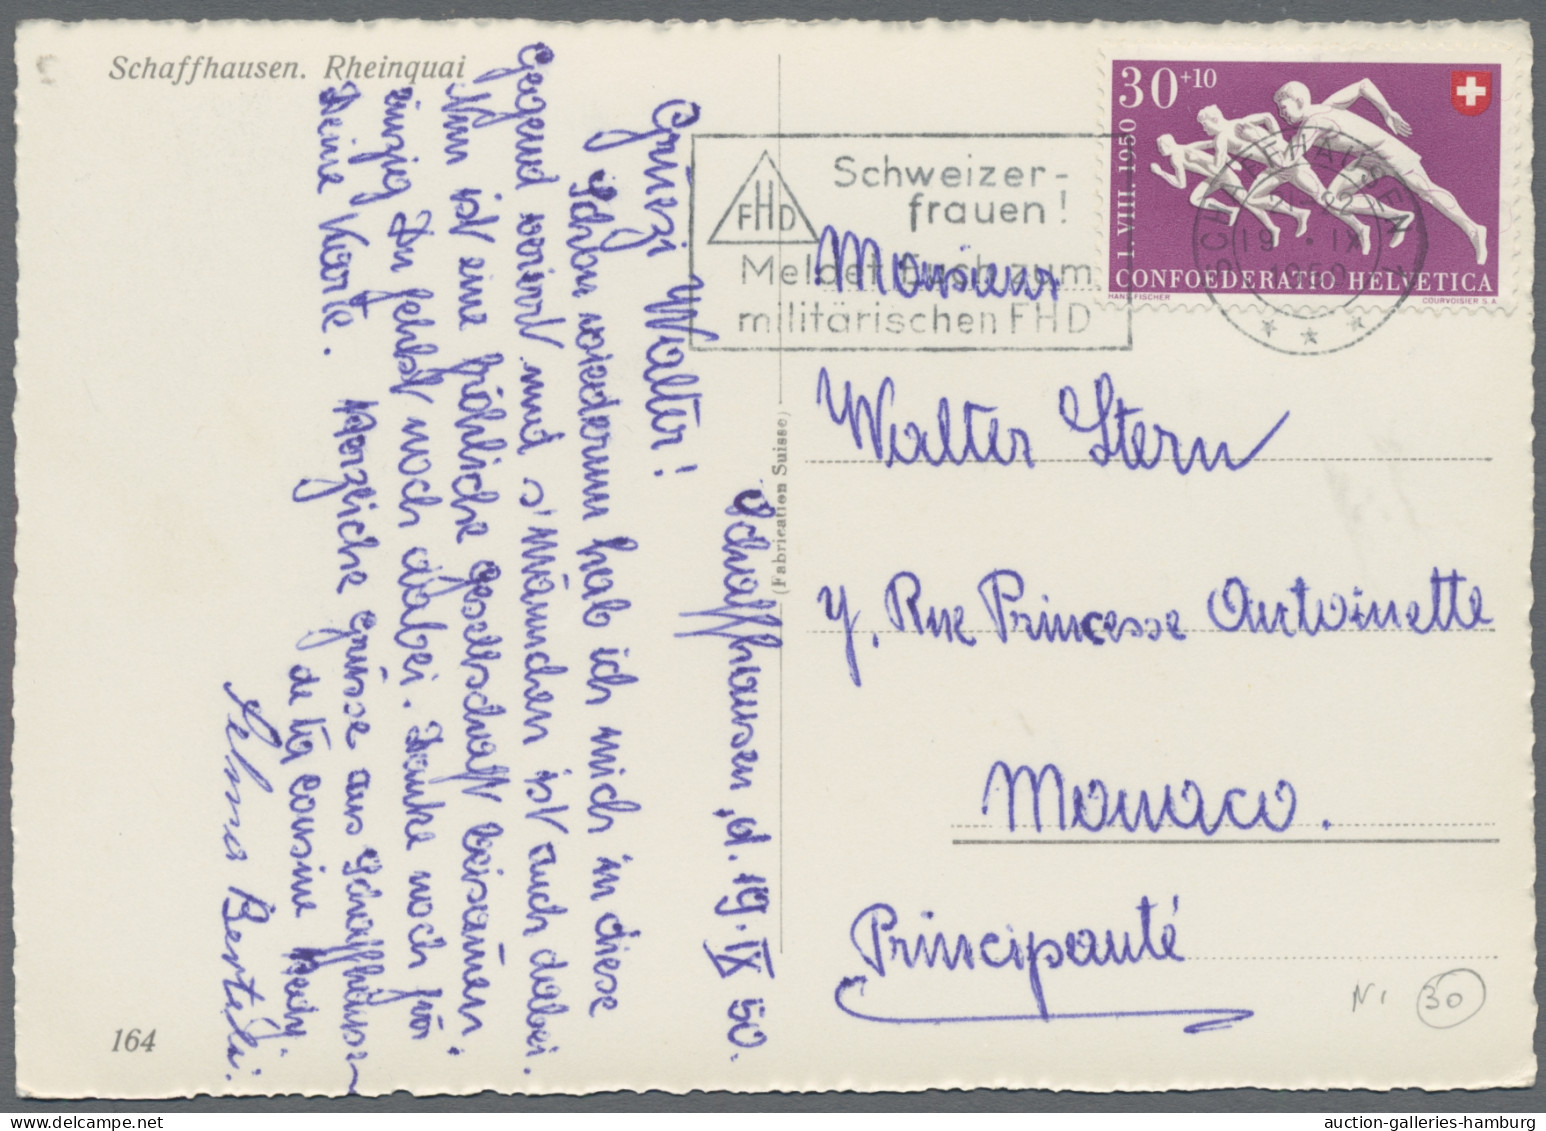 Schweiz: 1930-1960, 136 Briefe oder Karten aus der Schweiz in das Fürstentum Mon